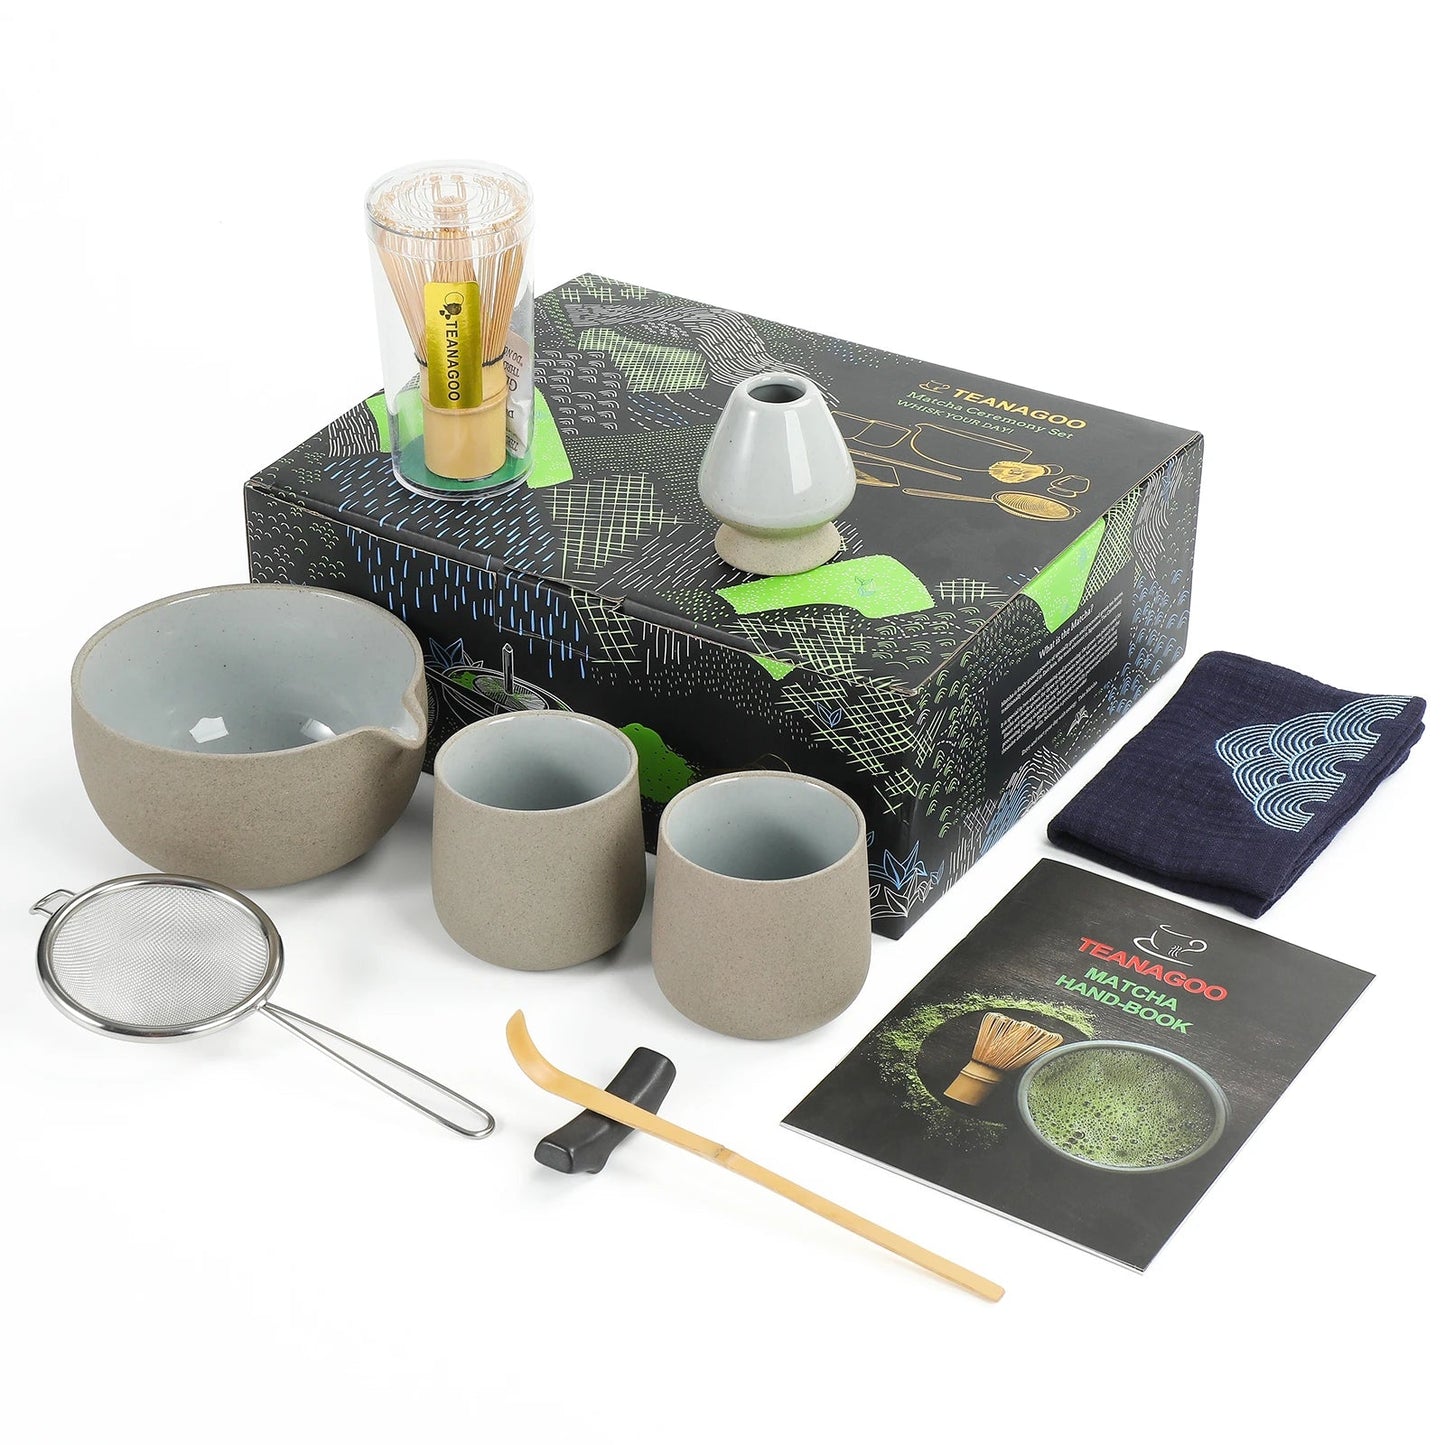 TEANAGOO service à thé japonais, bol à Matcha, fouet en bambou